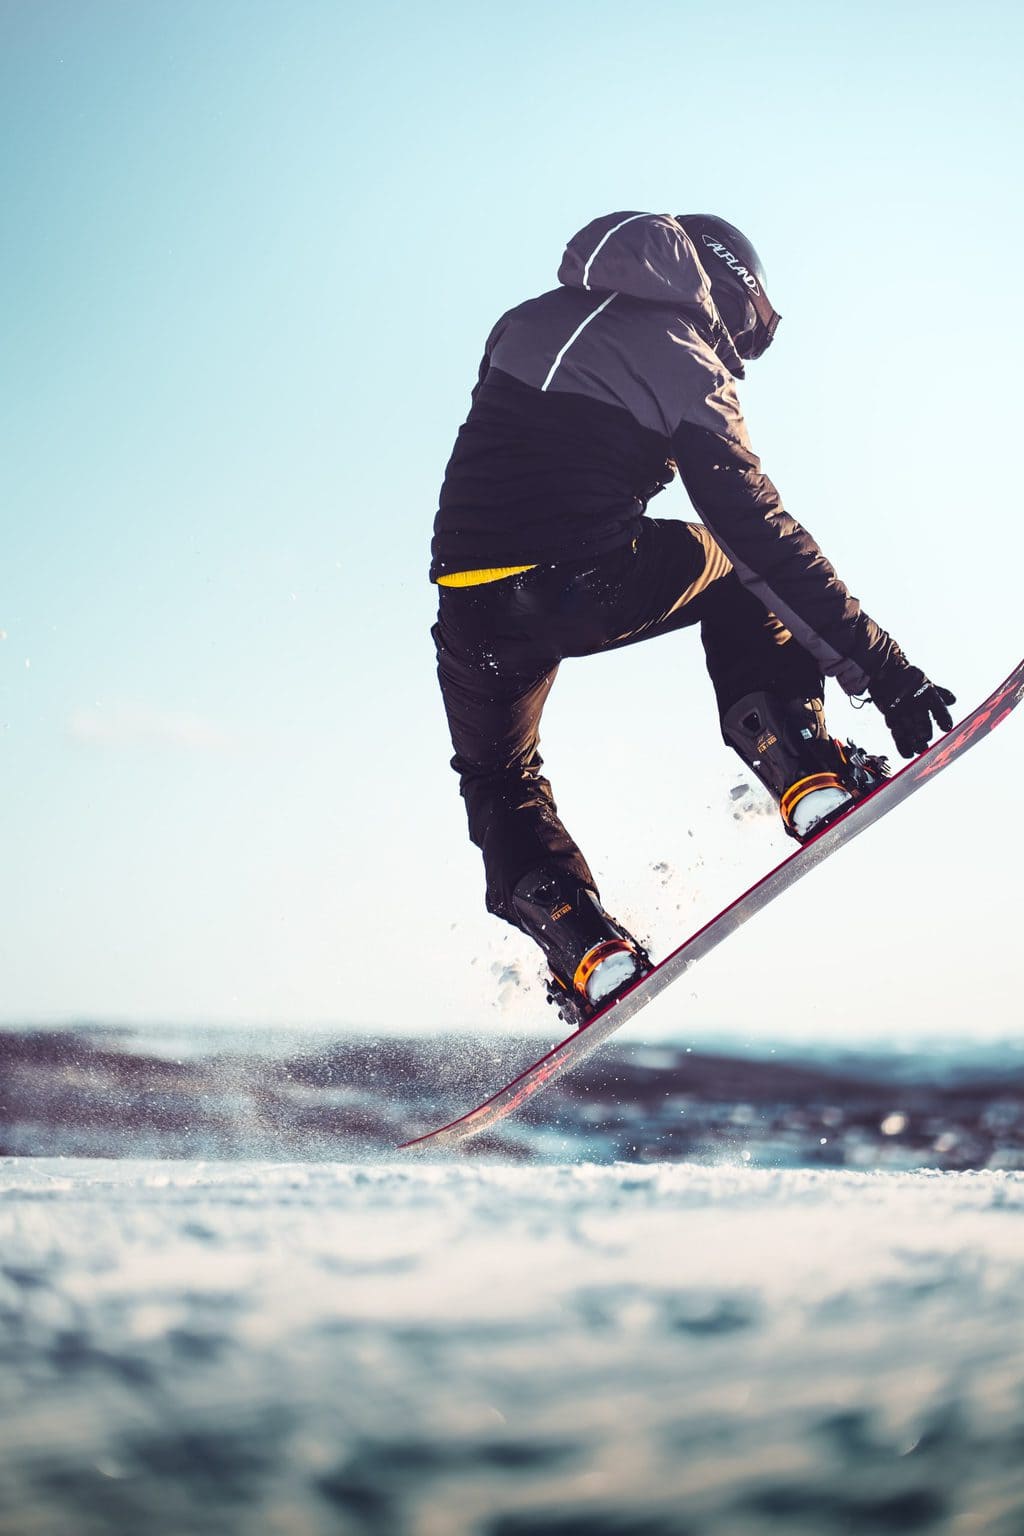 Een snowboarder in actie op een Duitse skipiste in de coronawinter